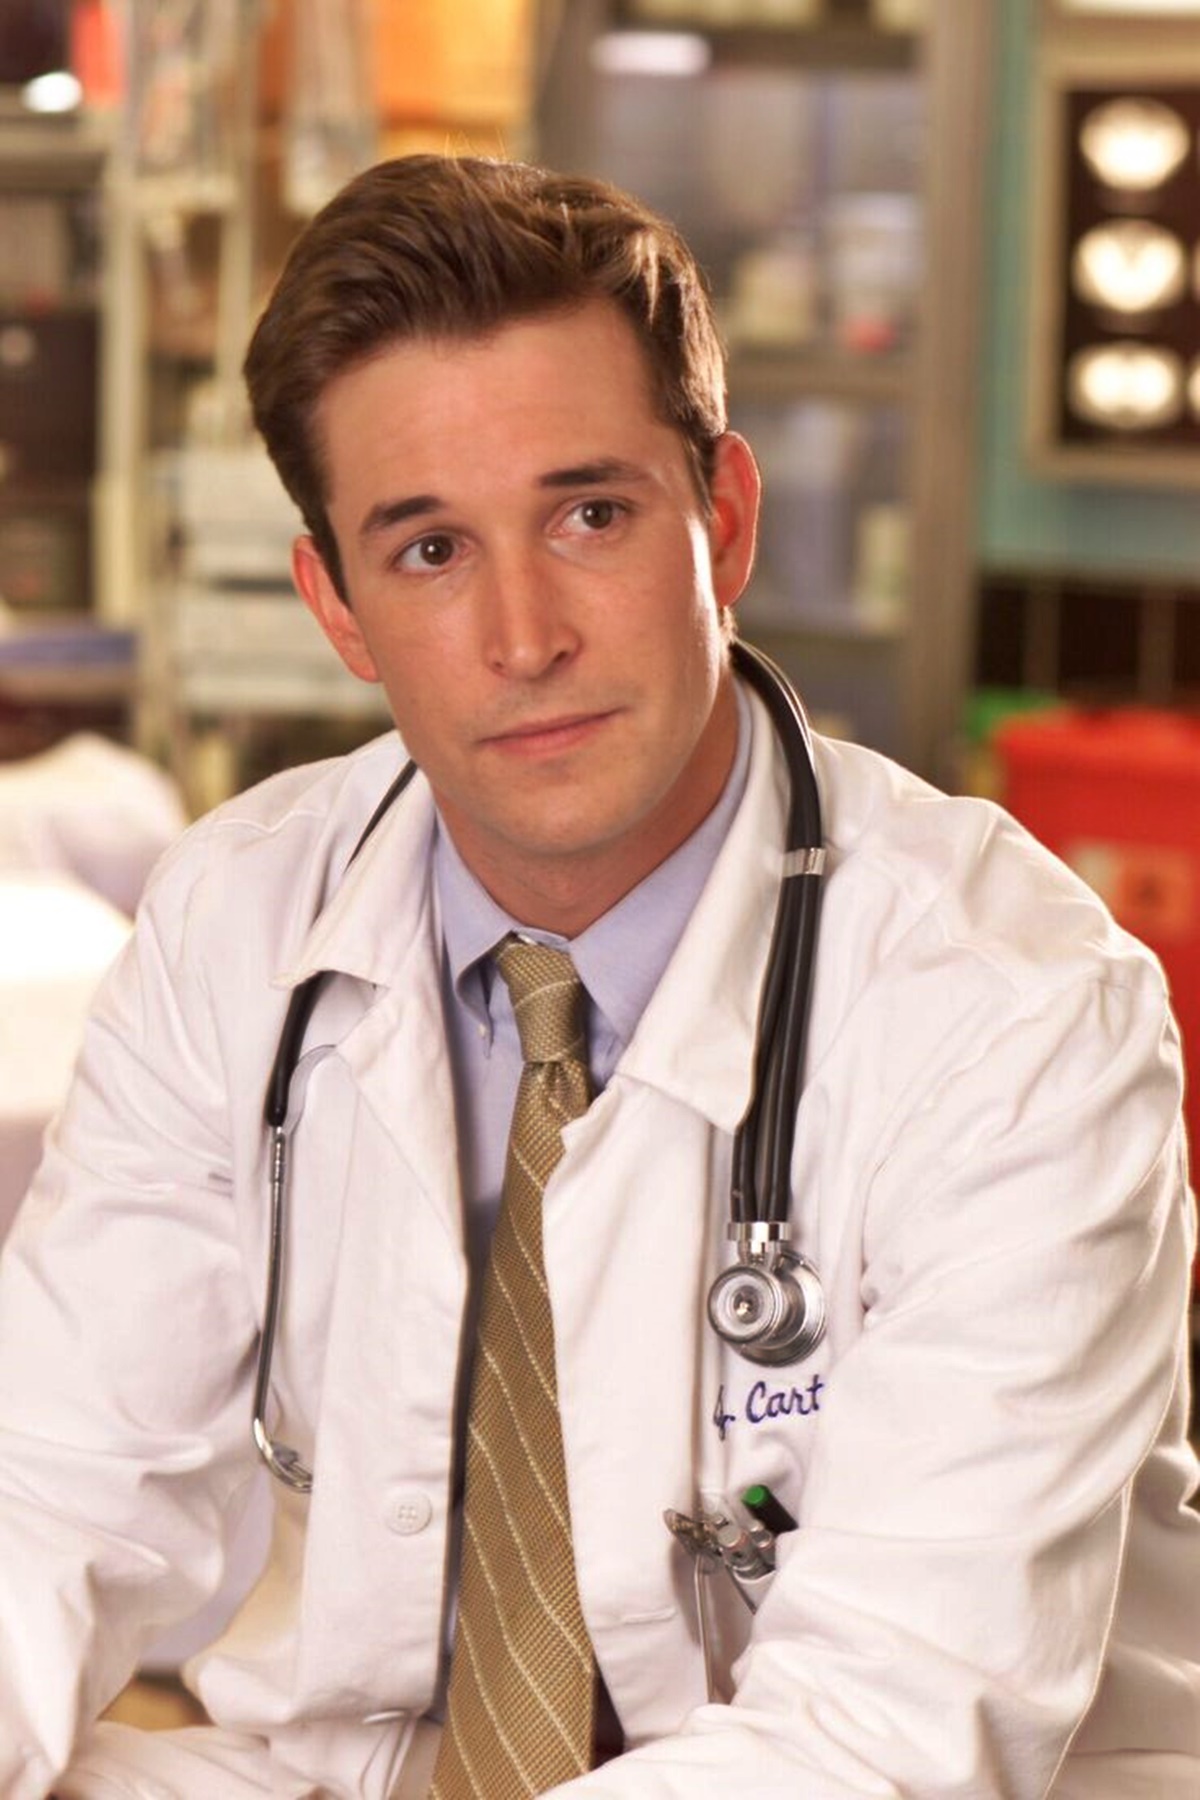 Sokkolóan fest a Vészhelyzet egykori szívtipró orvosa: teljesen megváltozott a külseje, senki nem ismeri fel - Carter doktor szerepét játszó Noah Wyle